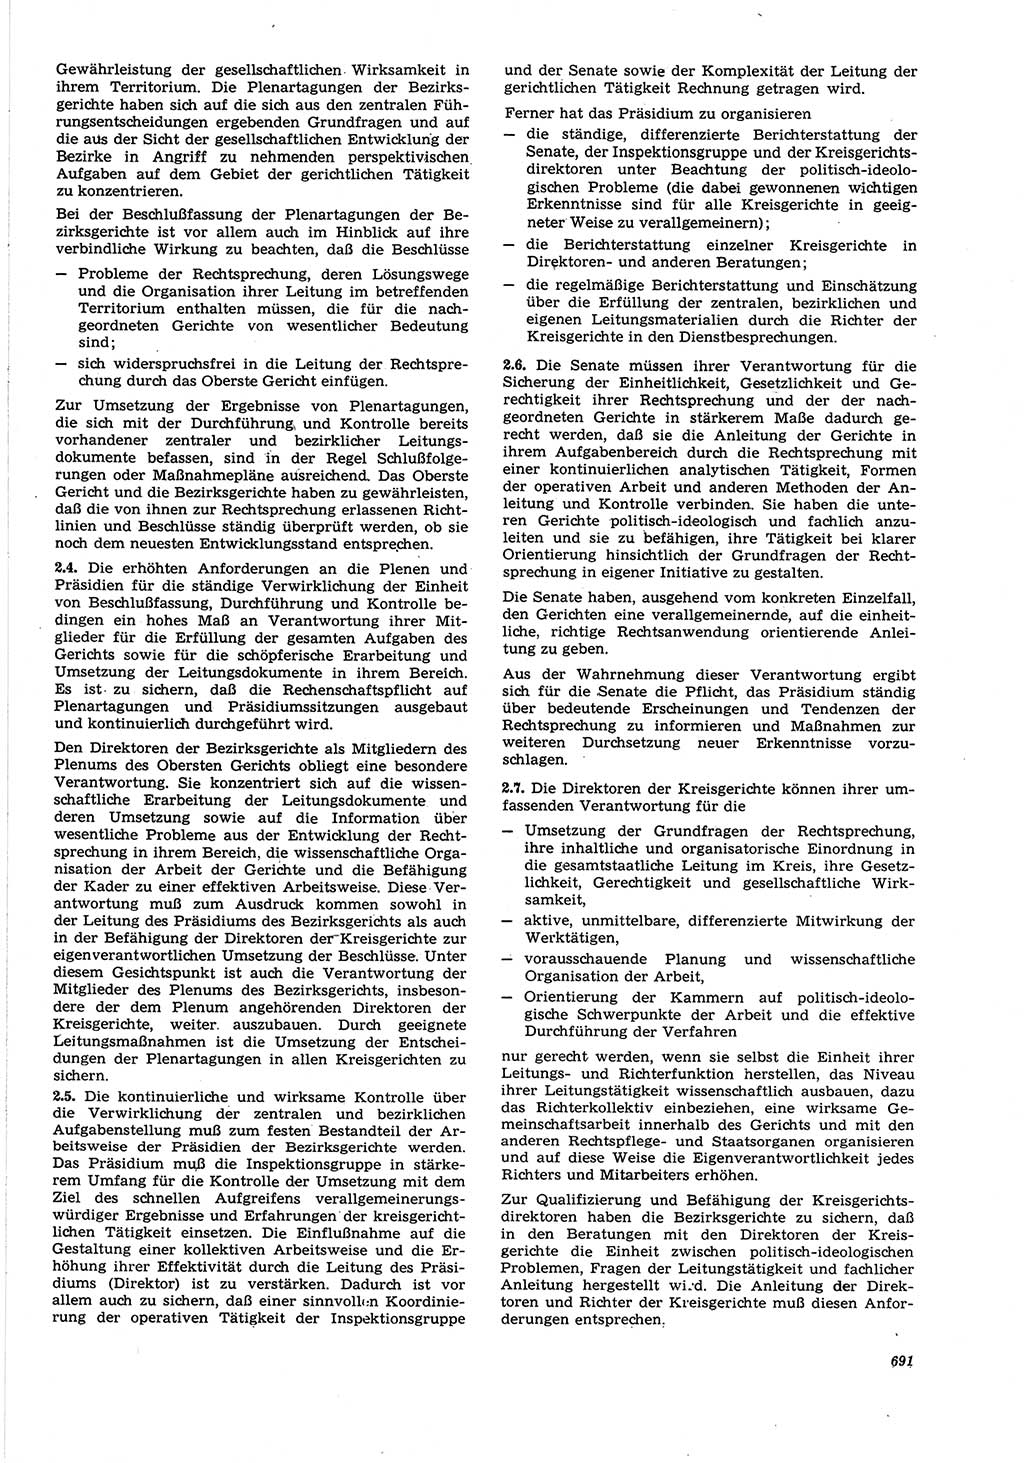 Neue Justiz (NJ), Zeitschrift für Recht und Rechtswissenschaft [Deutsche Demokratische Republik (DDR)], 21. Jahrgang 1967, Seite 691 (NJ DDR 1967, S. 691)